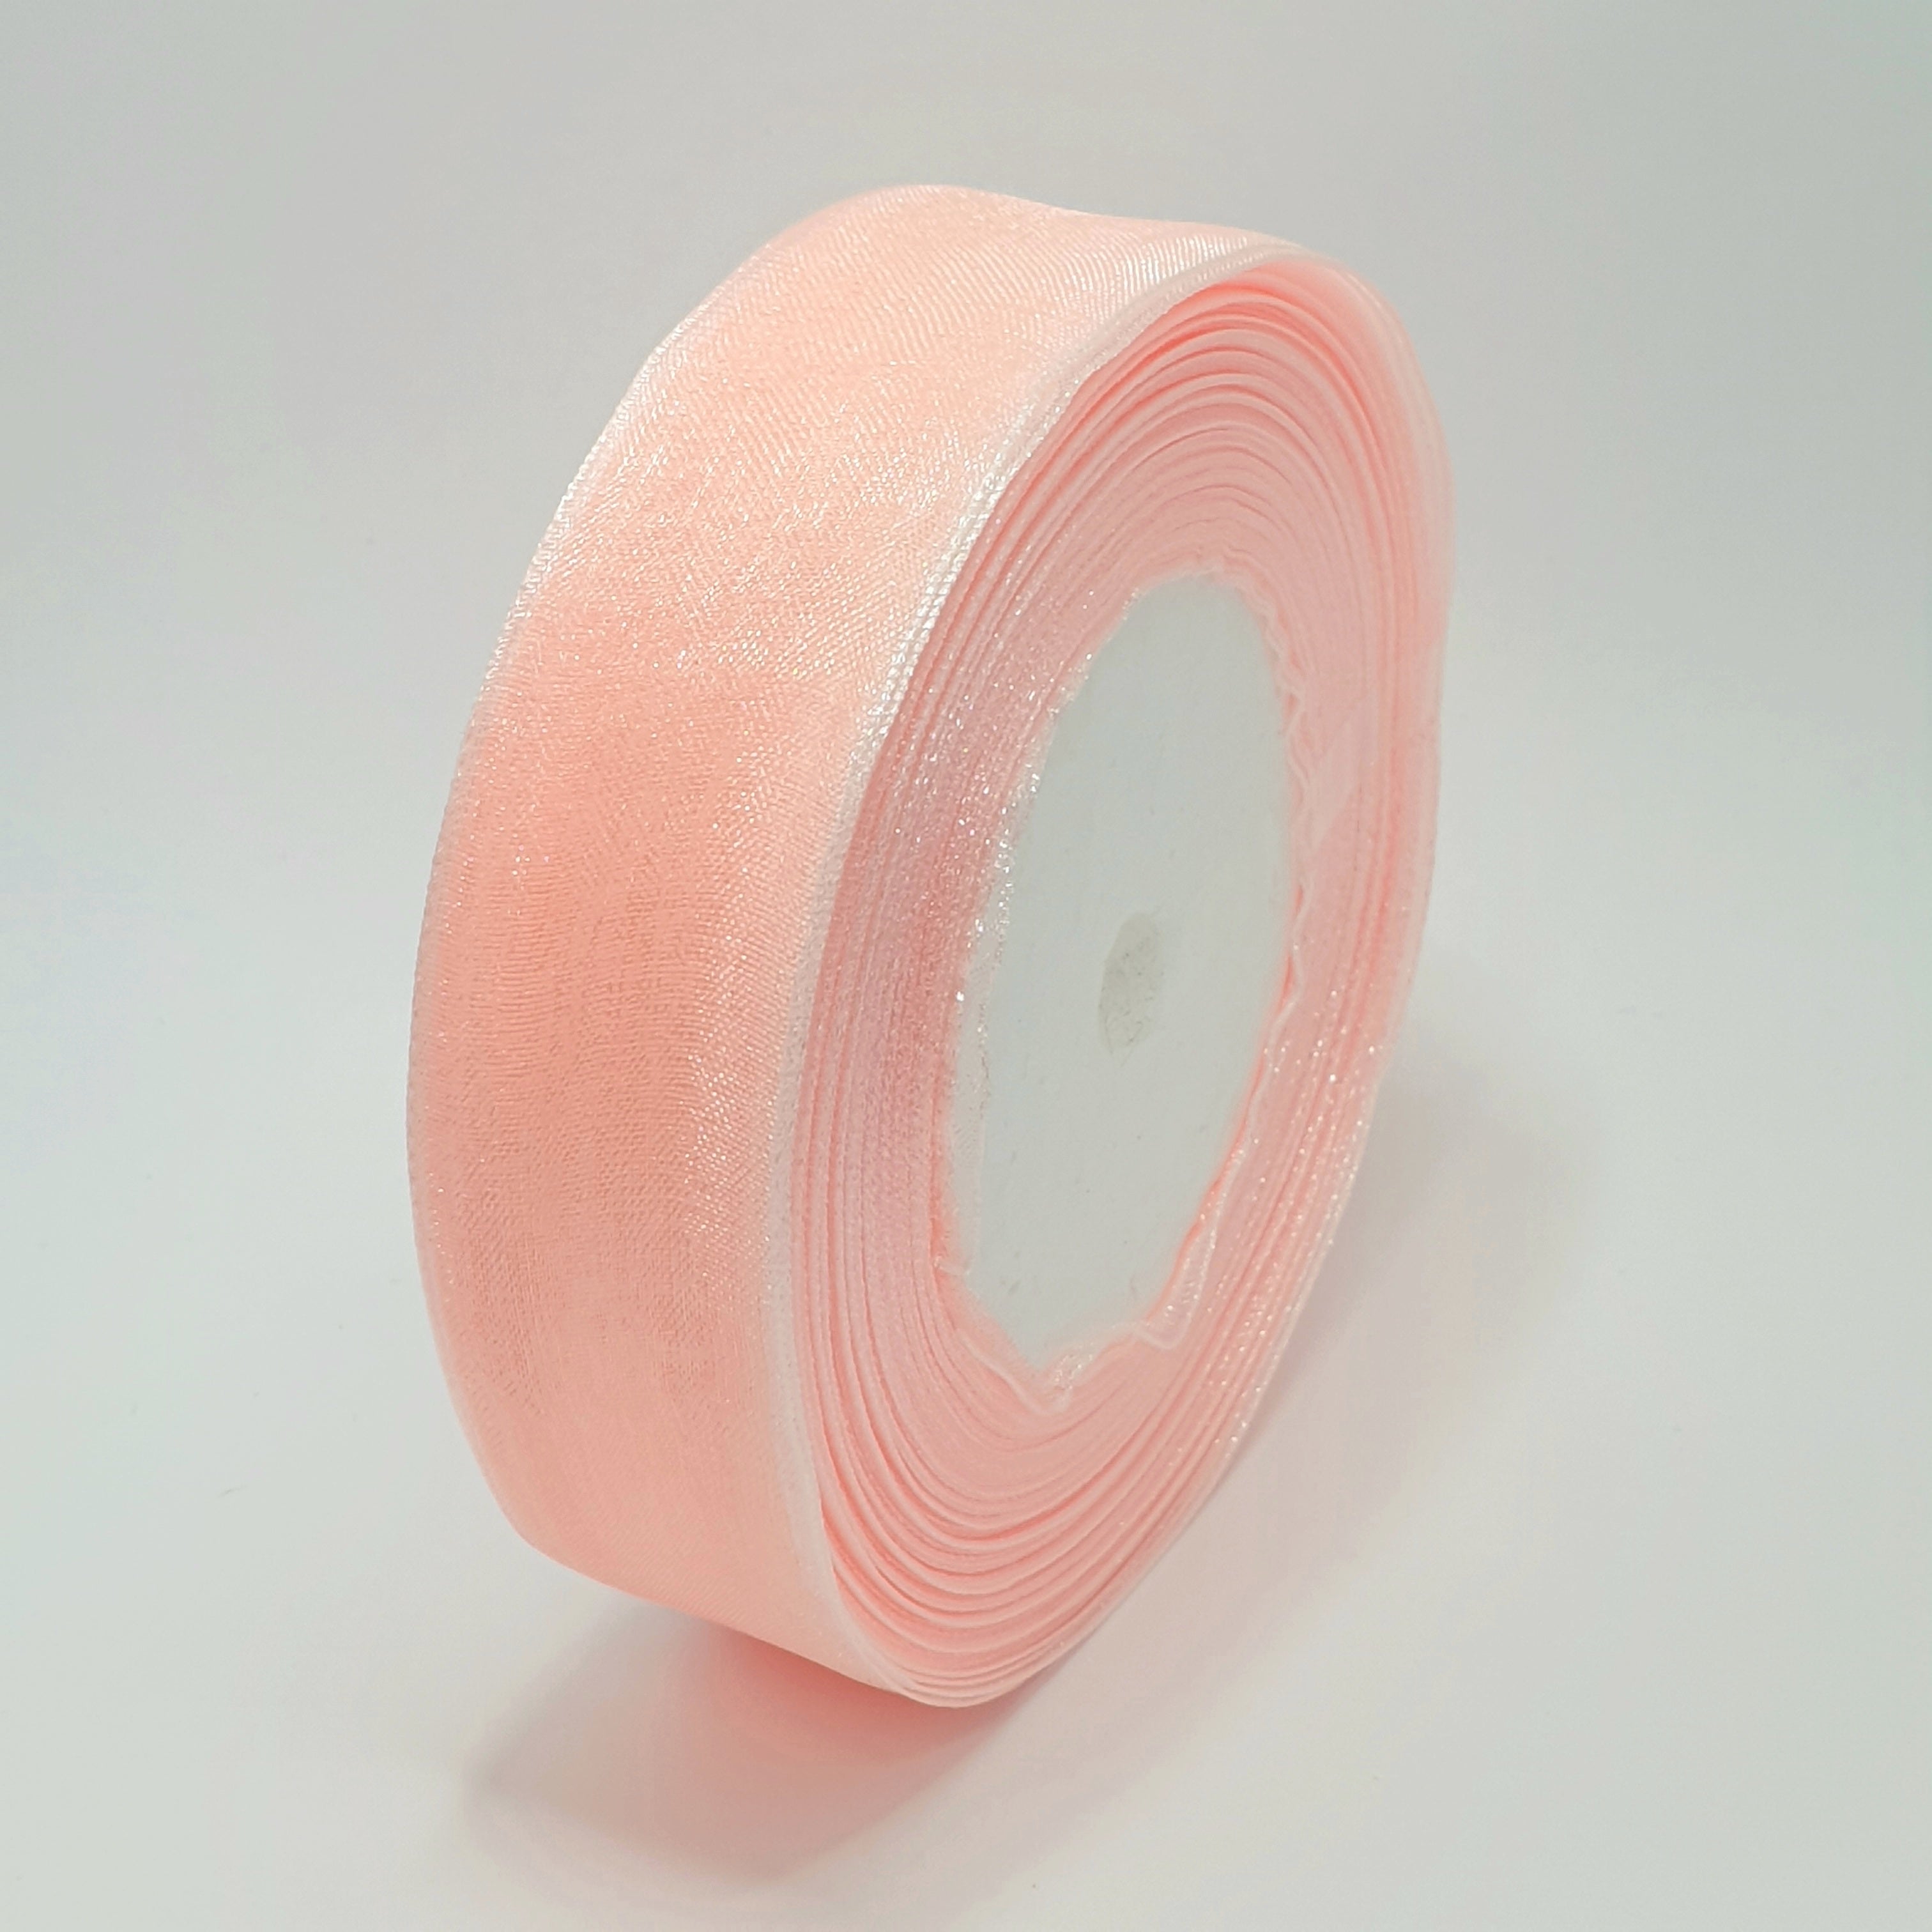 MajorCrafts 25mm 45metres Sheer Organza Fabric Ribbon Roll Pink Shade R1007